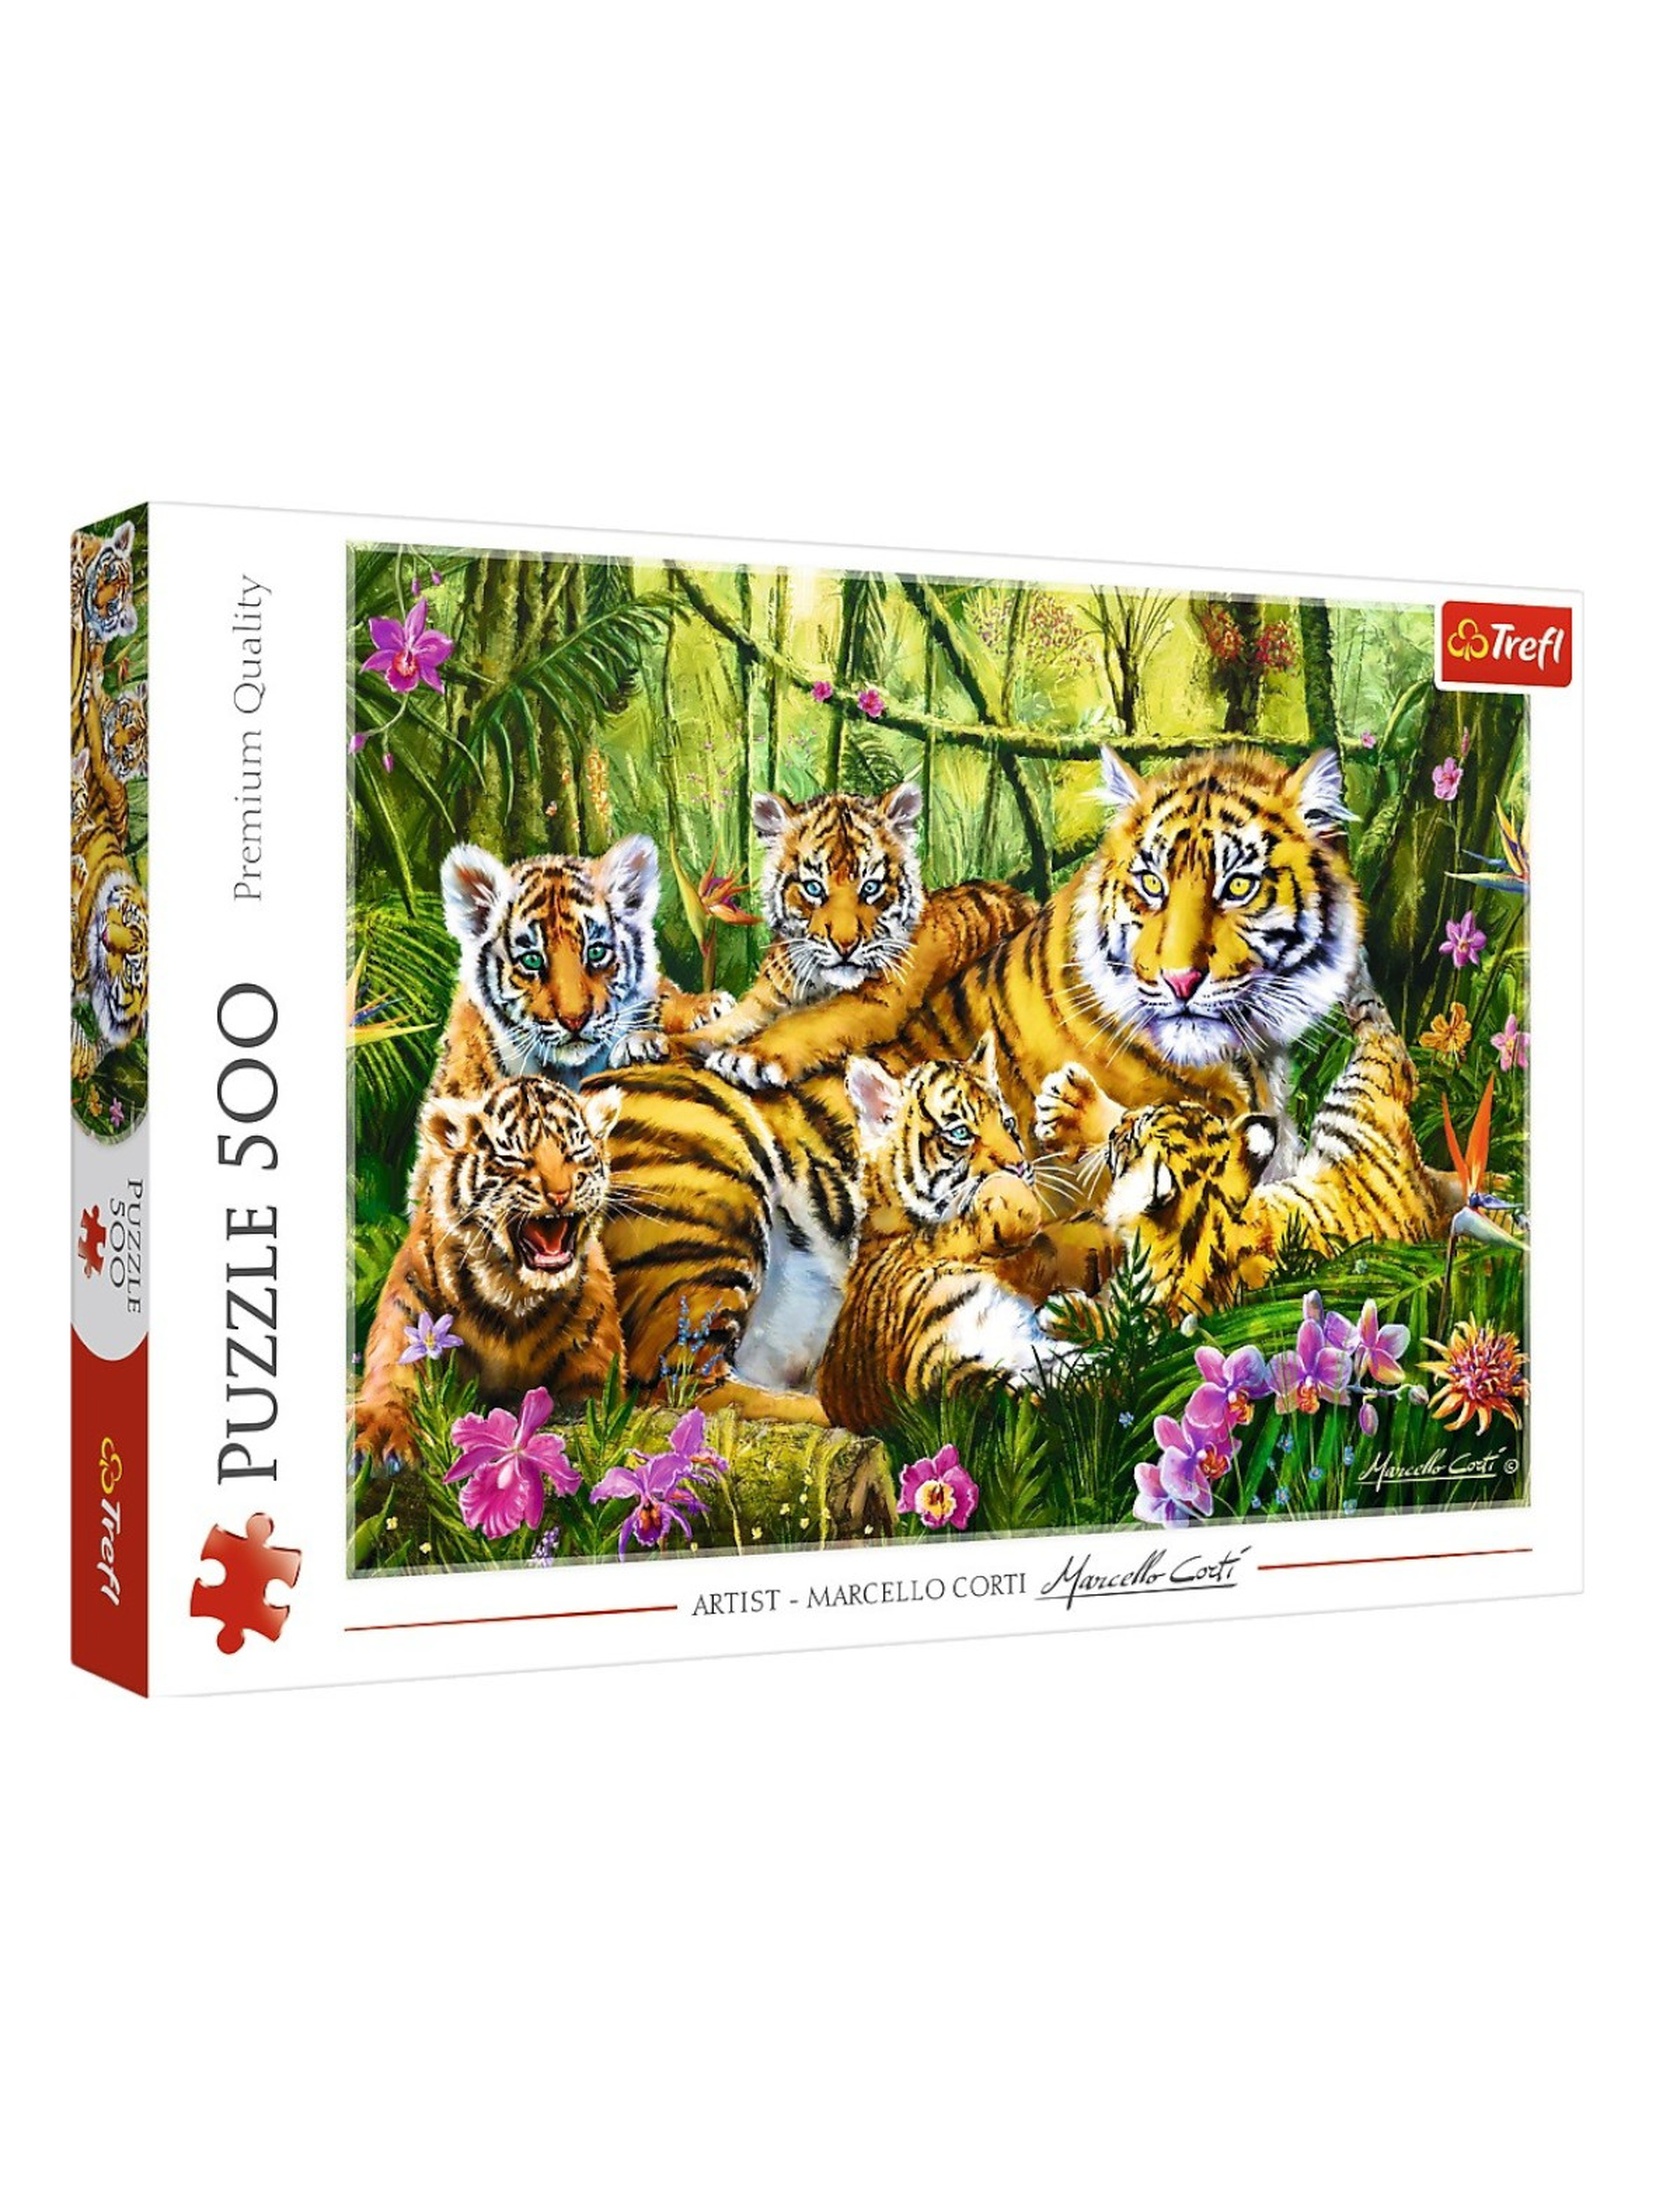 Puzzle 500 elementów - Rodzina Tygrysów